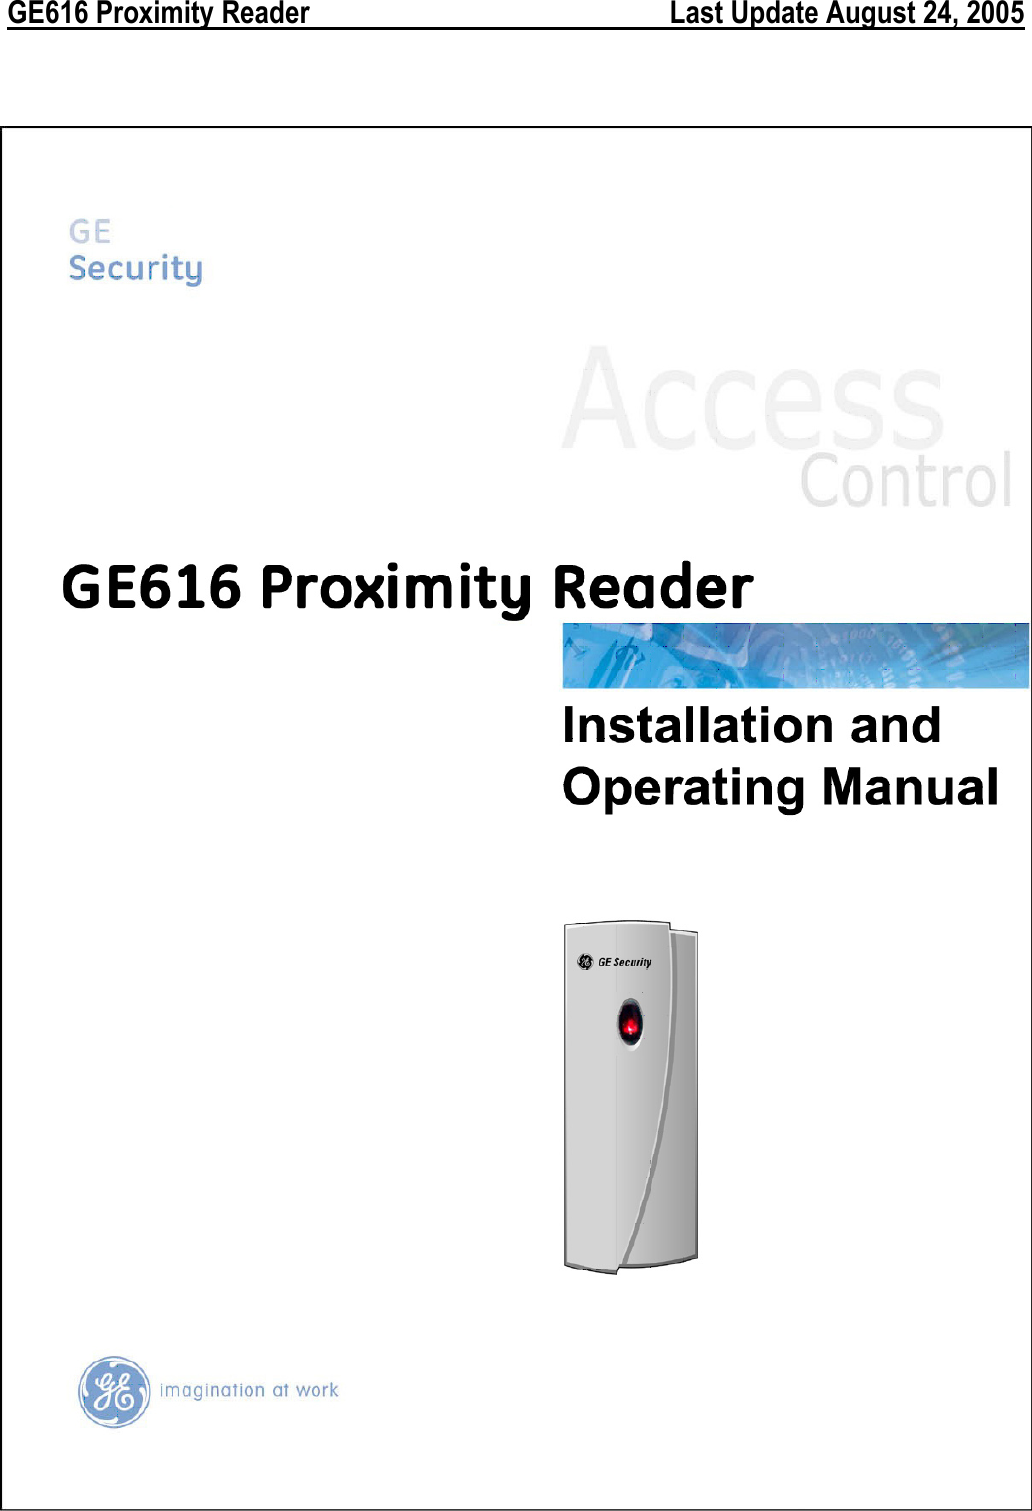  GE616 Proximity Reader        Last Update August 24, 2005                 